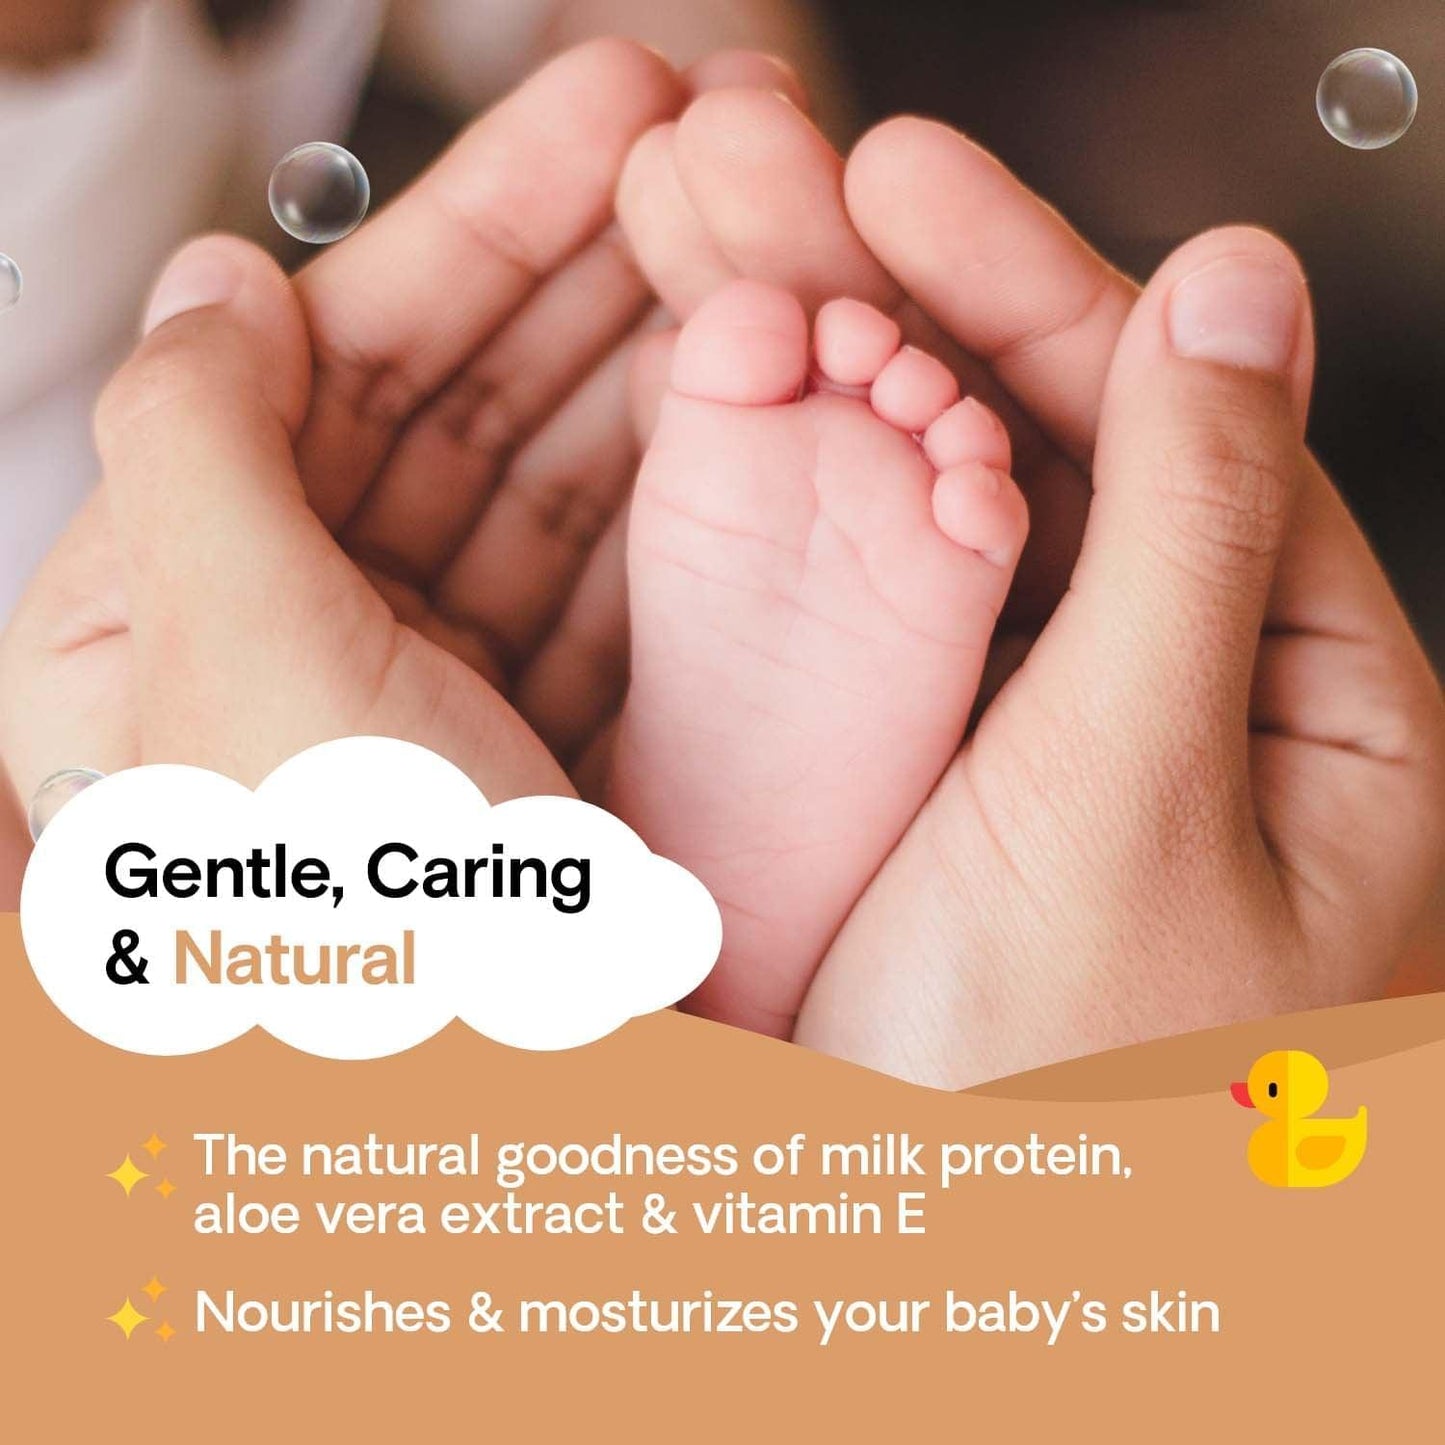 Natural Baby Skincare Regime